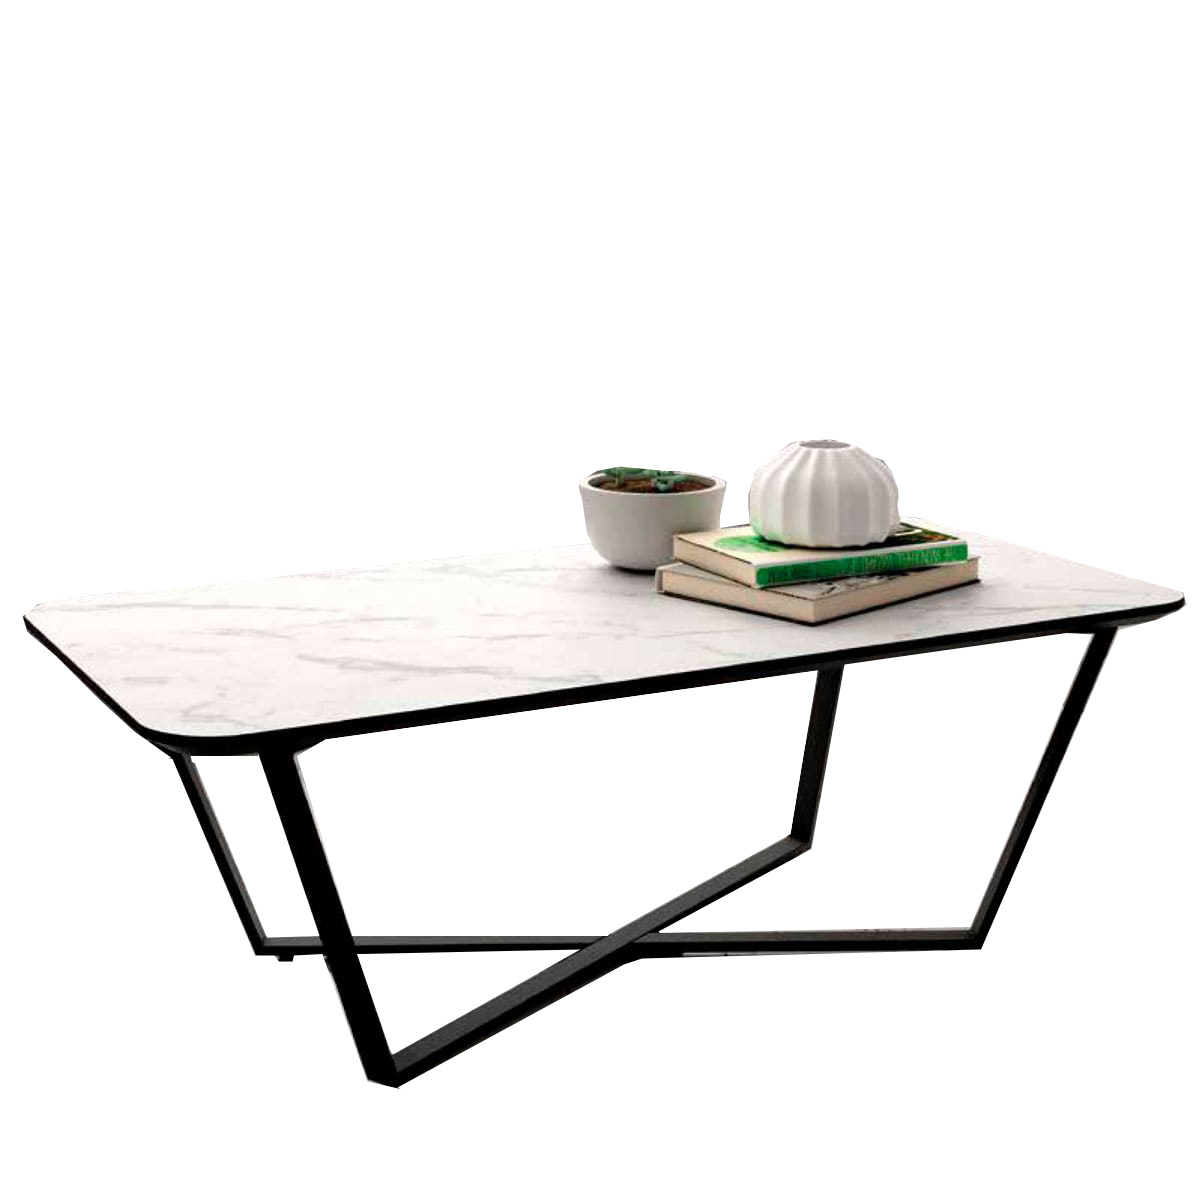 todo lo mejor unir ventilador Mesa rectangular efecto marmol - Artikalia - Muebles de diseño y tendecia